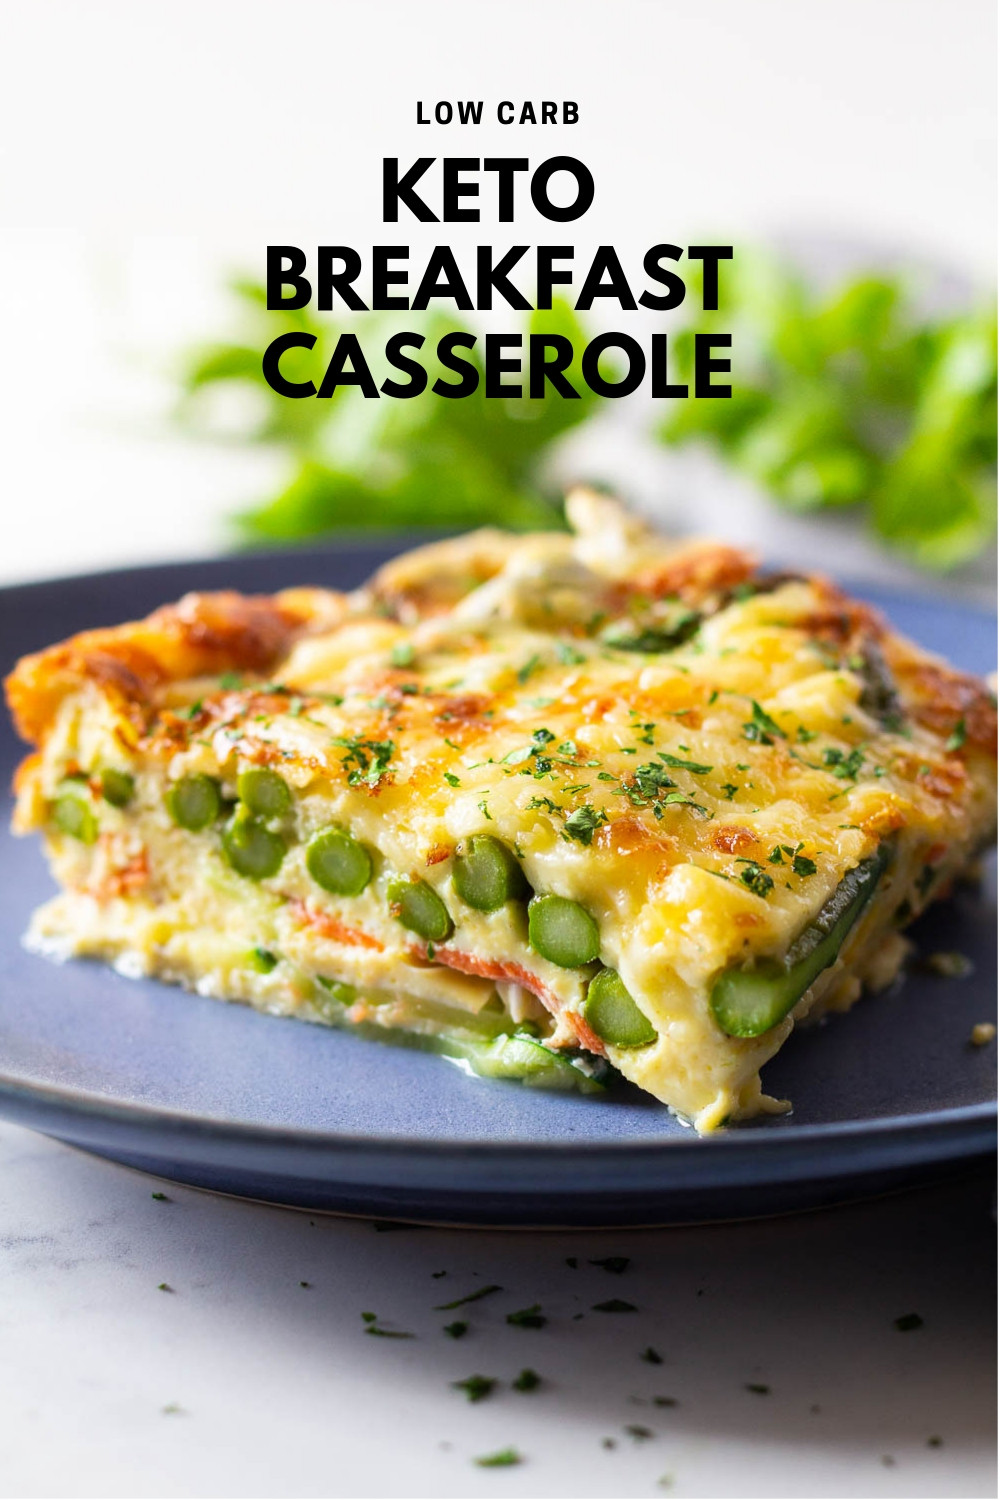 Vegetarian Keto Casserole Recipes
 Easy Keto Breakfast Casserole Green Healthy Cooking